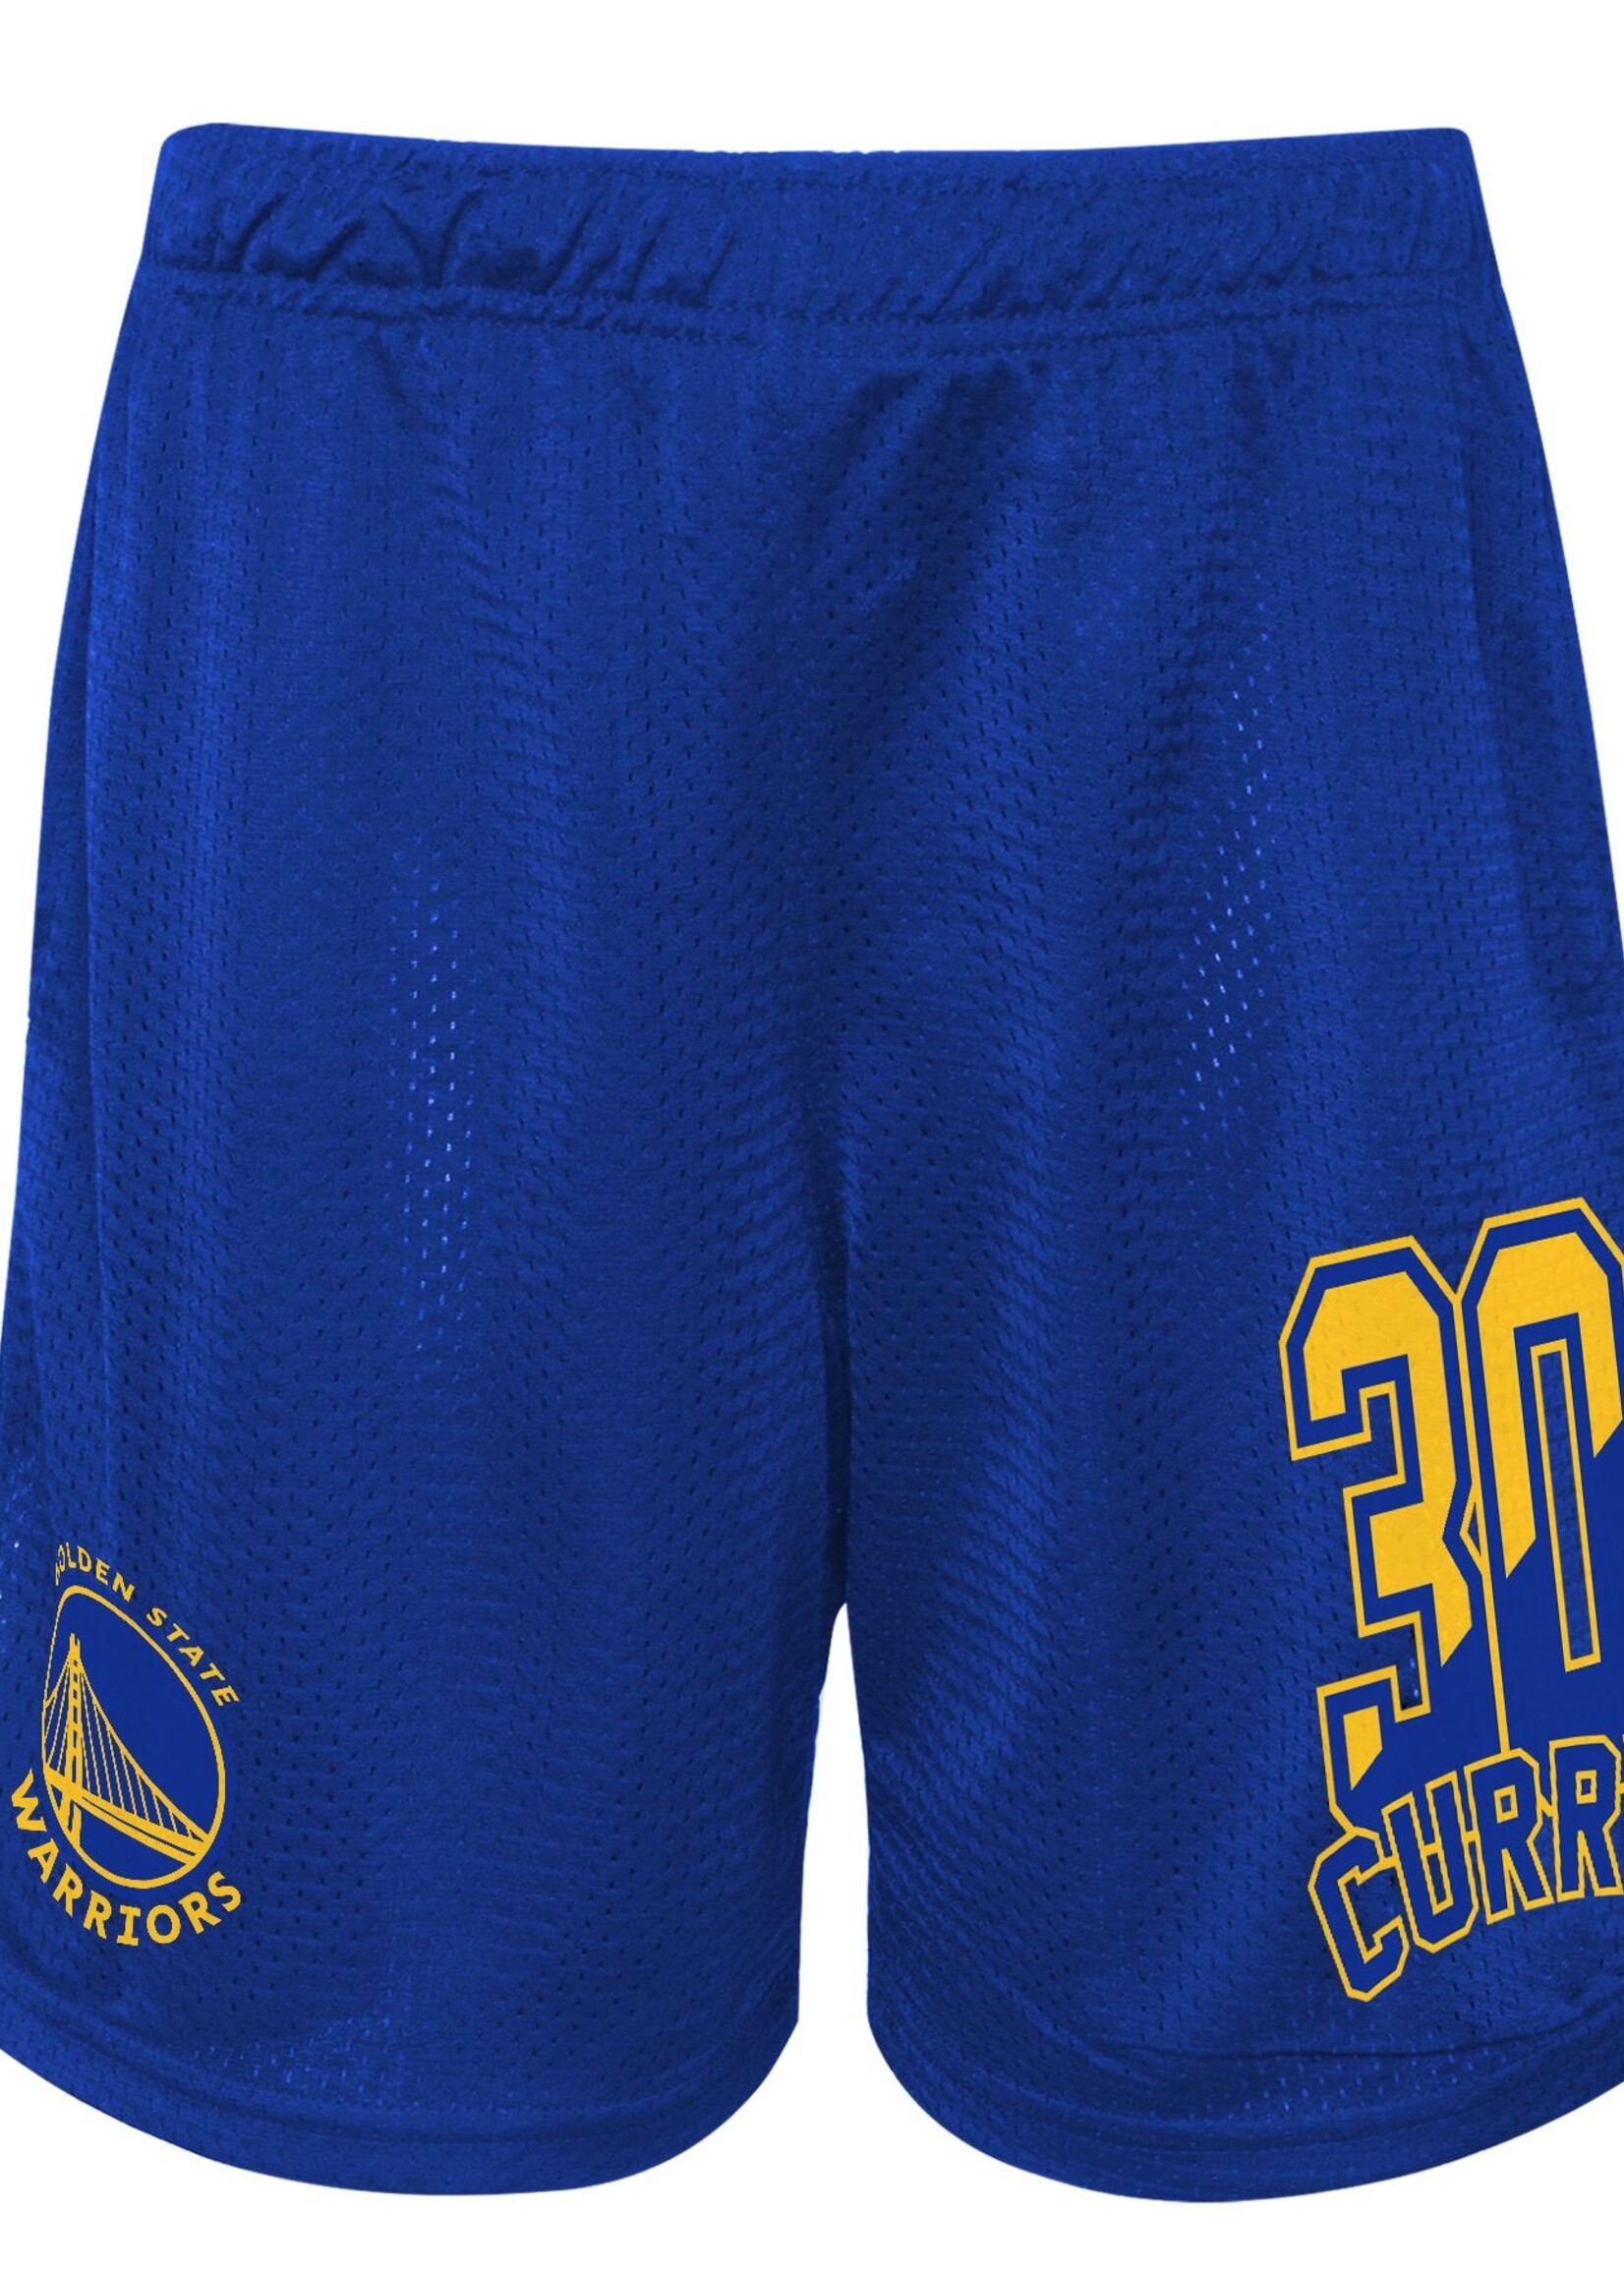 Outerstuff NBA Steph Curry Short Bleu 2.0